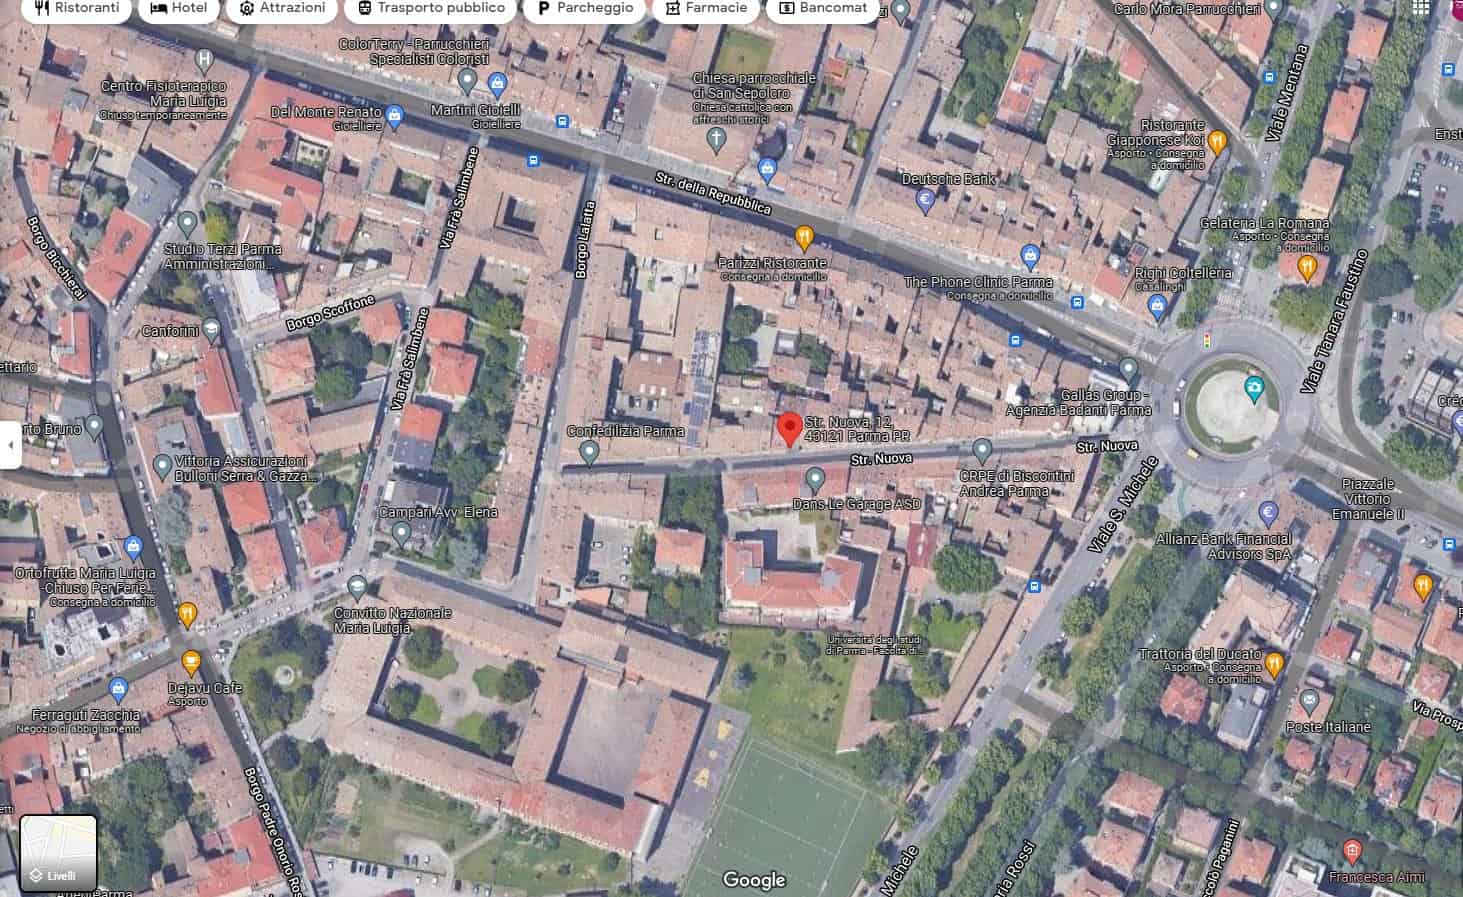 Monolocale zona Barriera Repubblica per una persona utenze incluse LIBERO DAL 25/01 Image 8